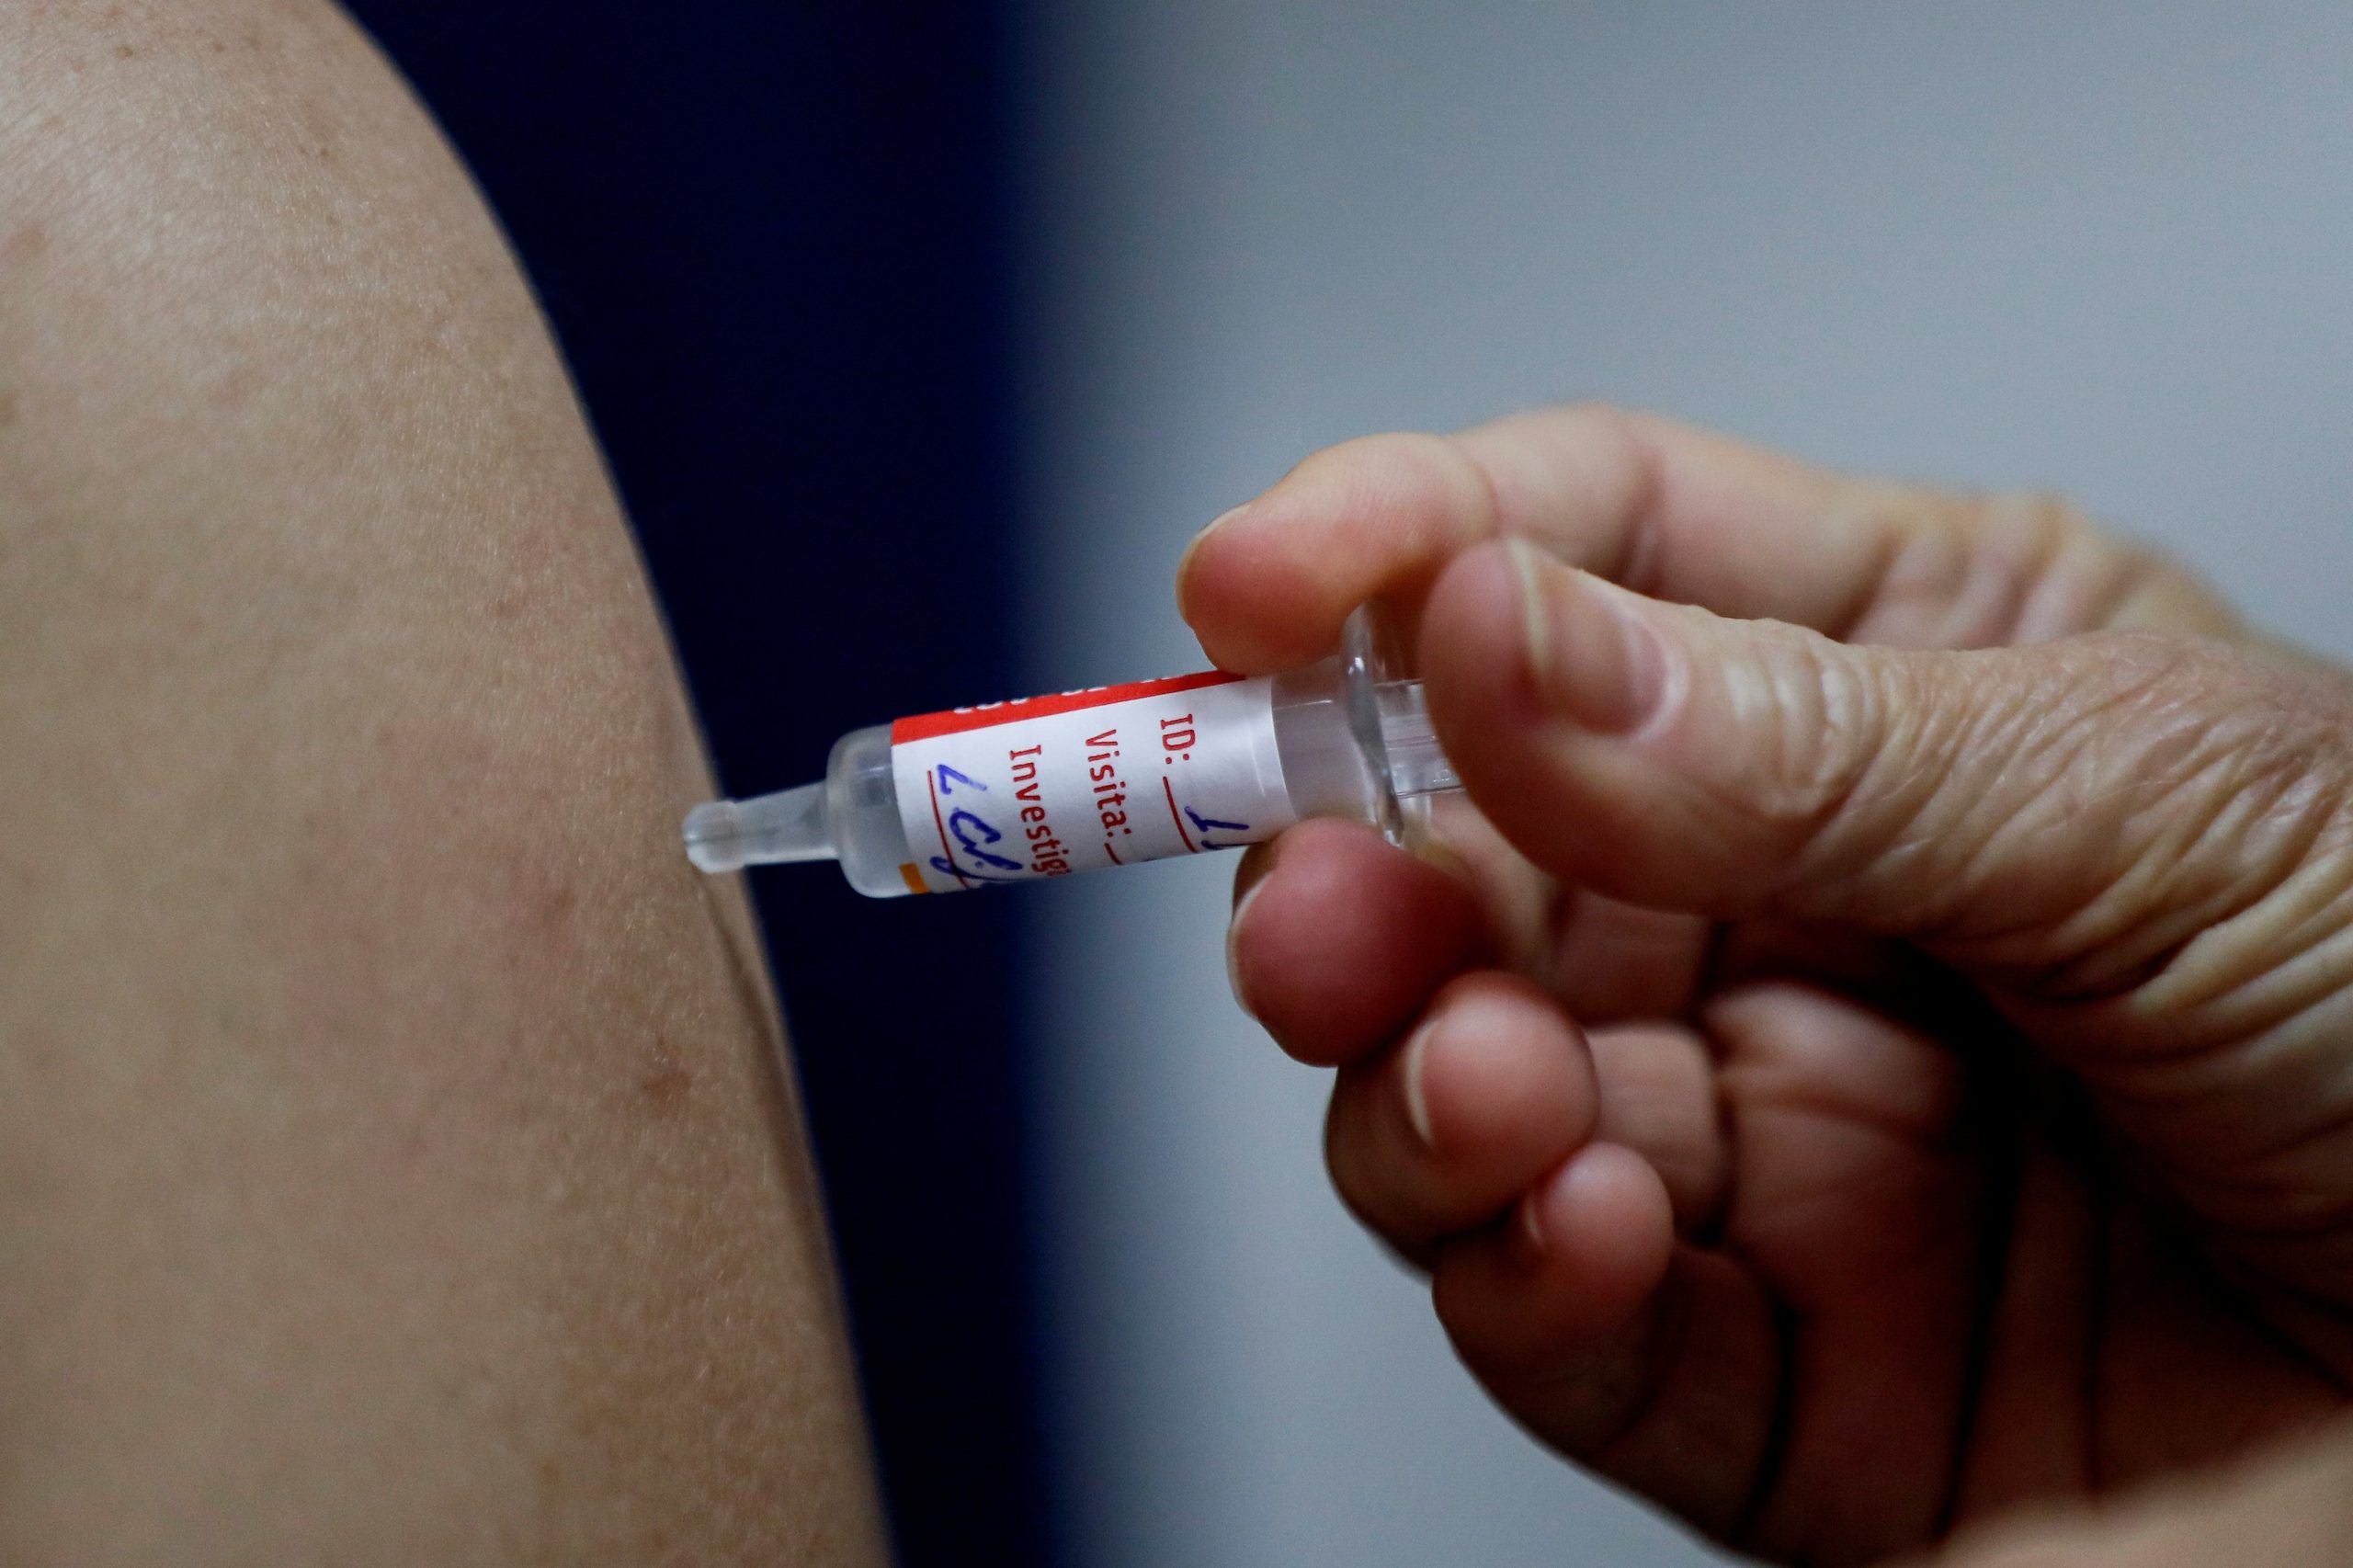 Unicef quiere adquirir más de mil millones de jeringas para futuras vacunas  contra el COVID-19 - AlbertoNews - Periodismo sin censura